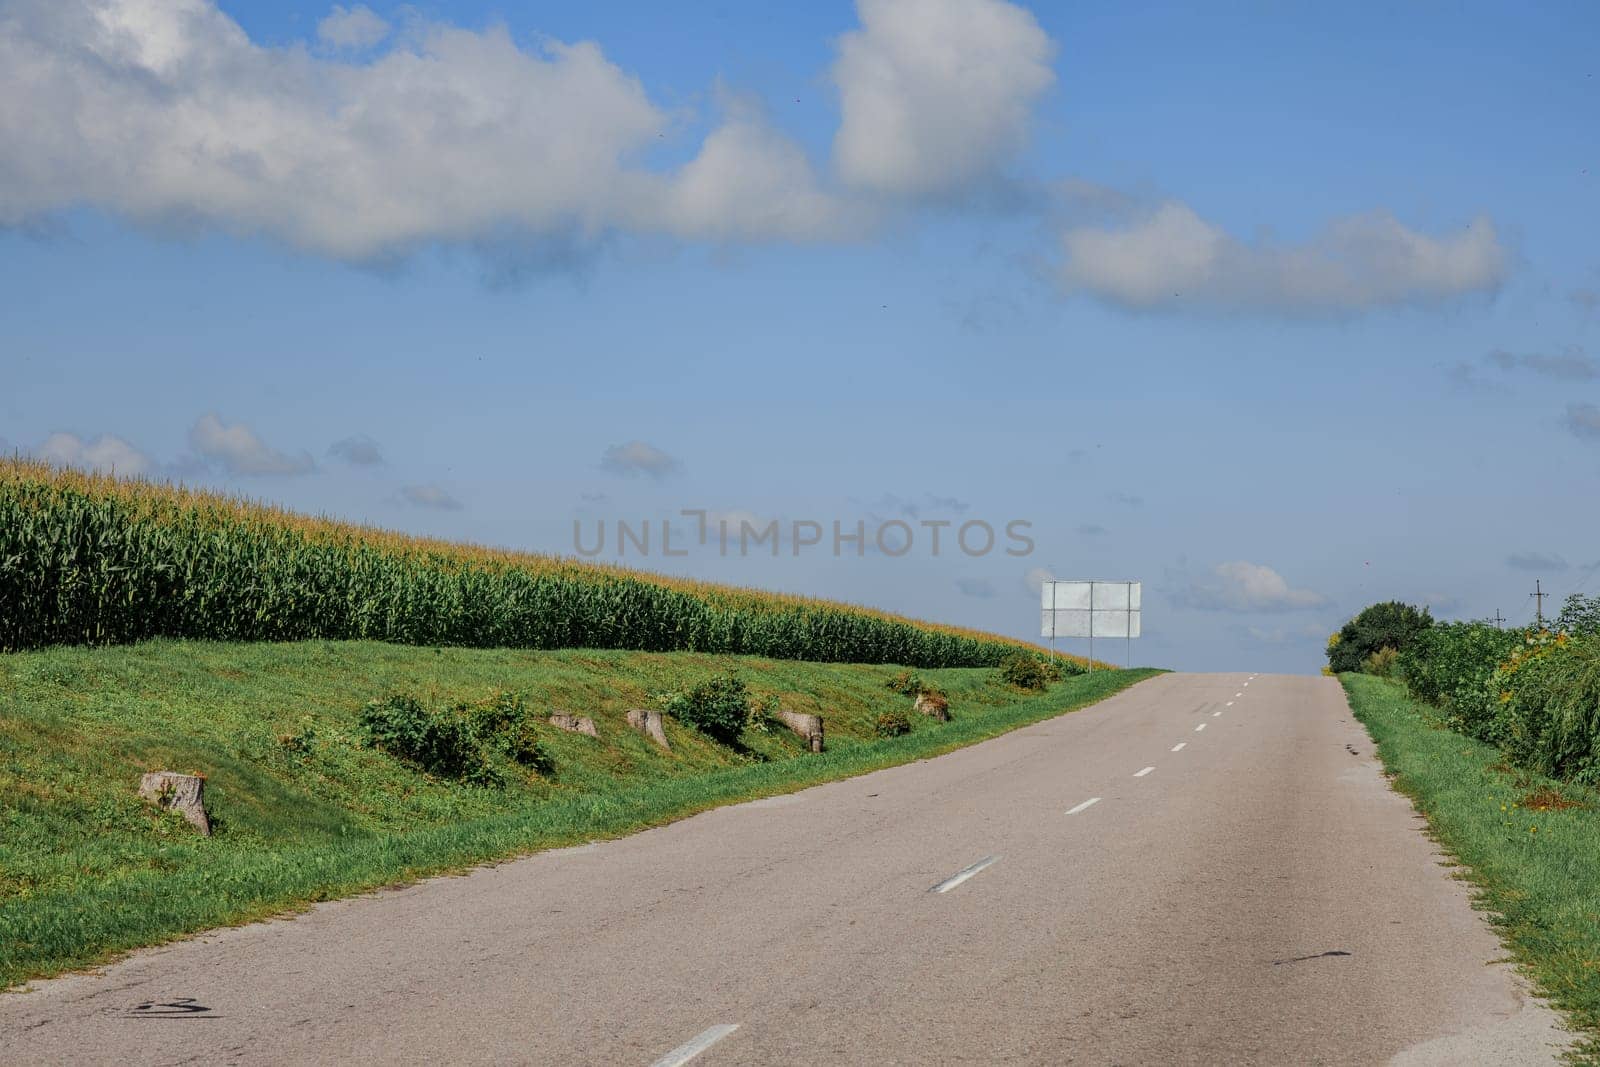 road blue sky and green field by IvanDerkachphoto